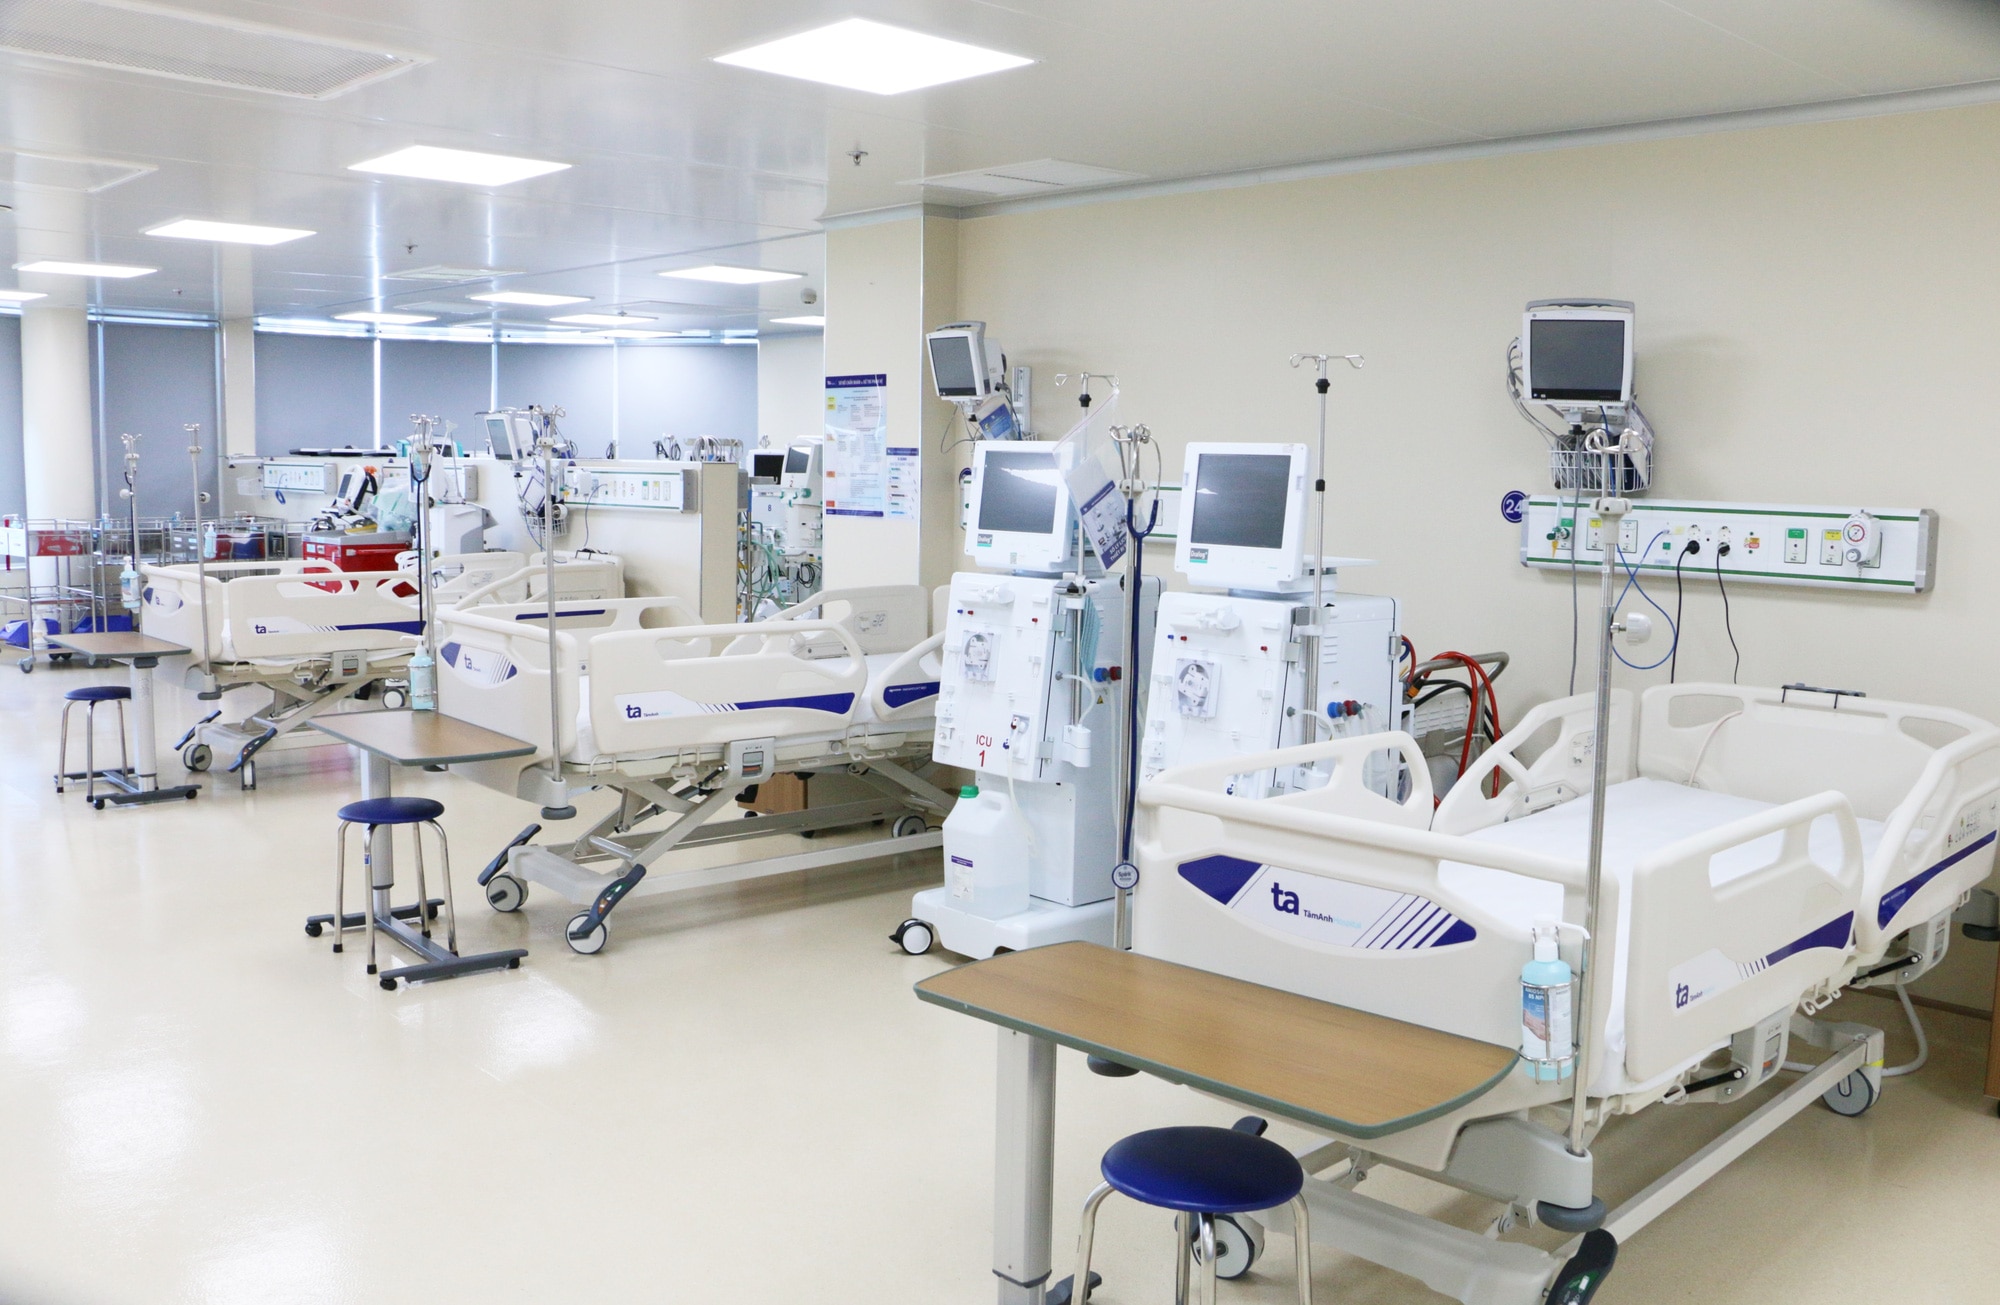 Trung tâm hồi sức cấp cứu được đầu tư các trang thiết bị máy móc tiên tiến bậc nhất cho phép thực hiện nhiều kỹ thuật hồi sức cấp cứu cao cấp - Ảnh: GIA HƯNG